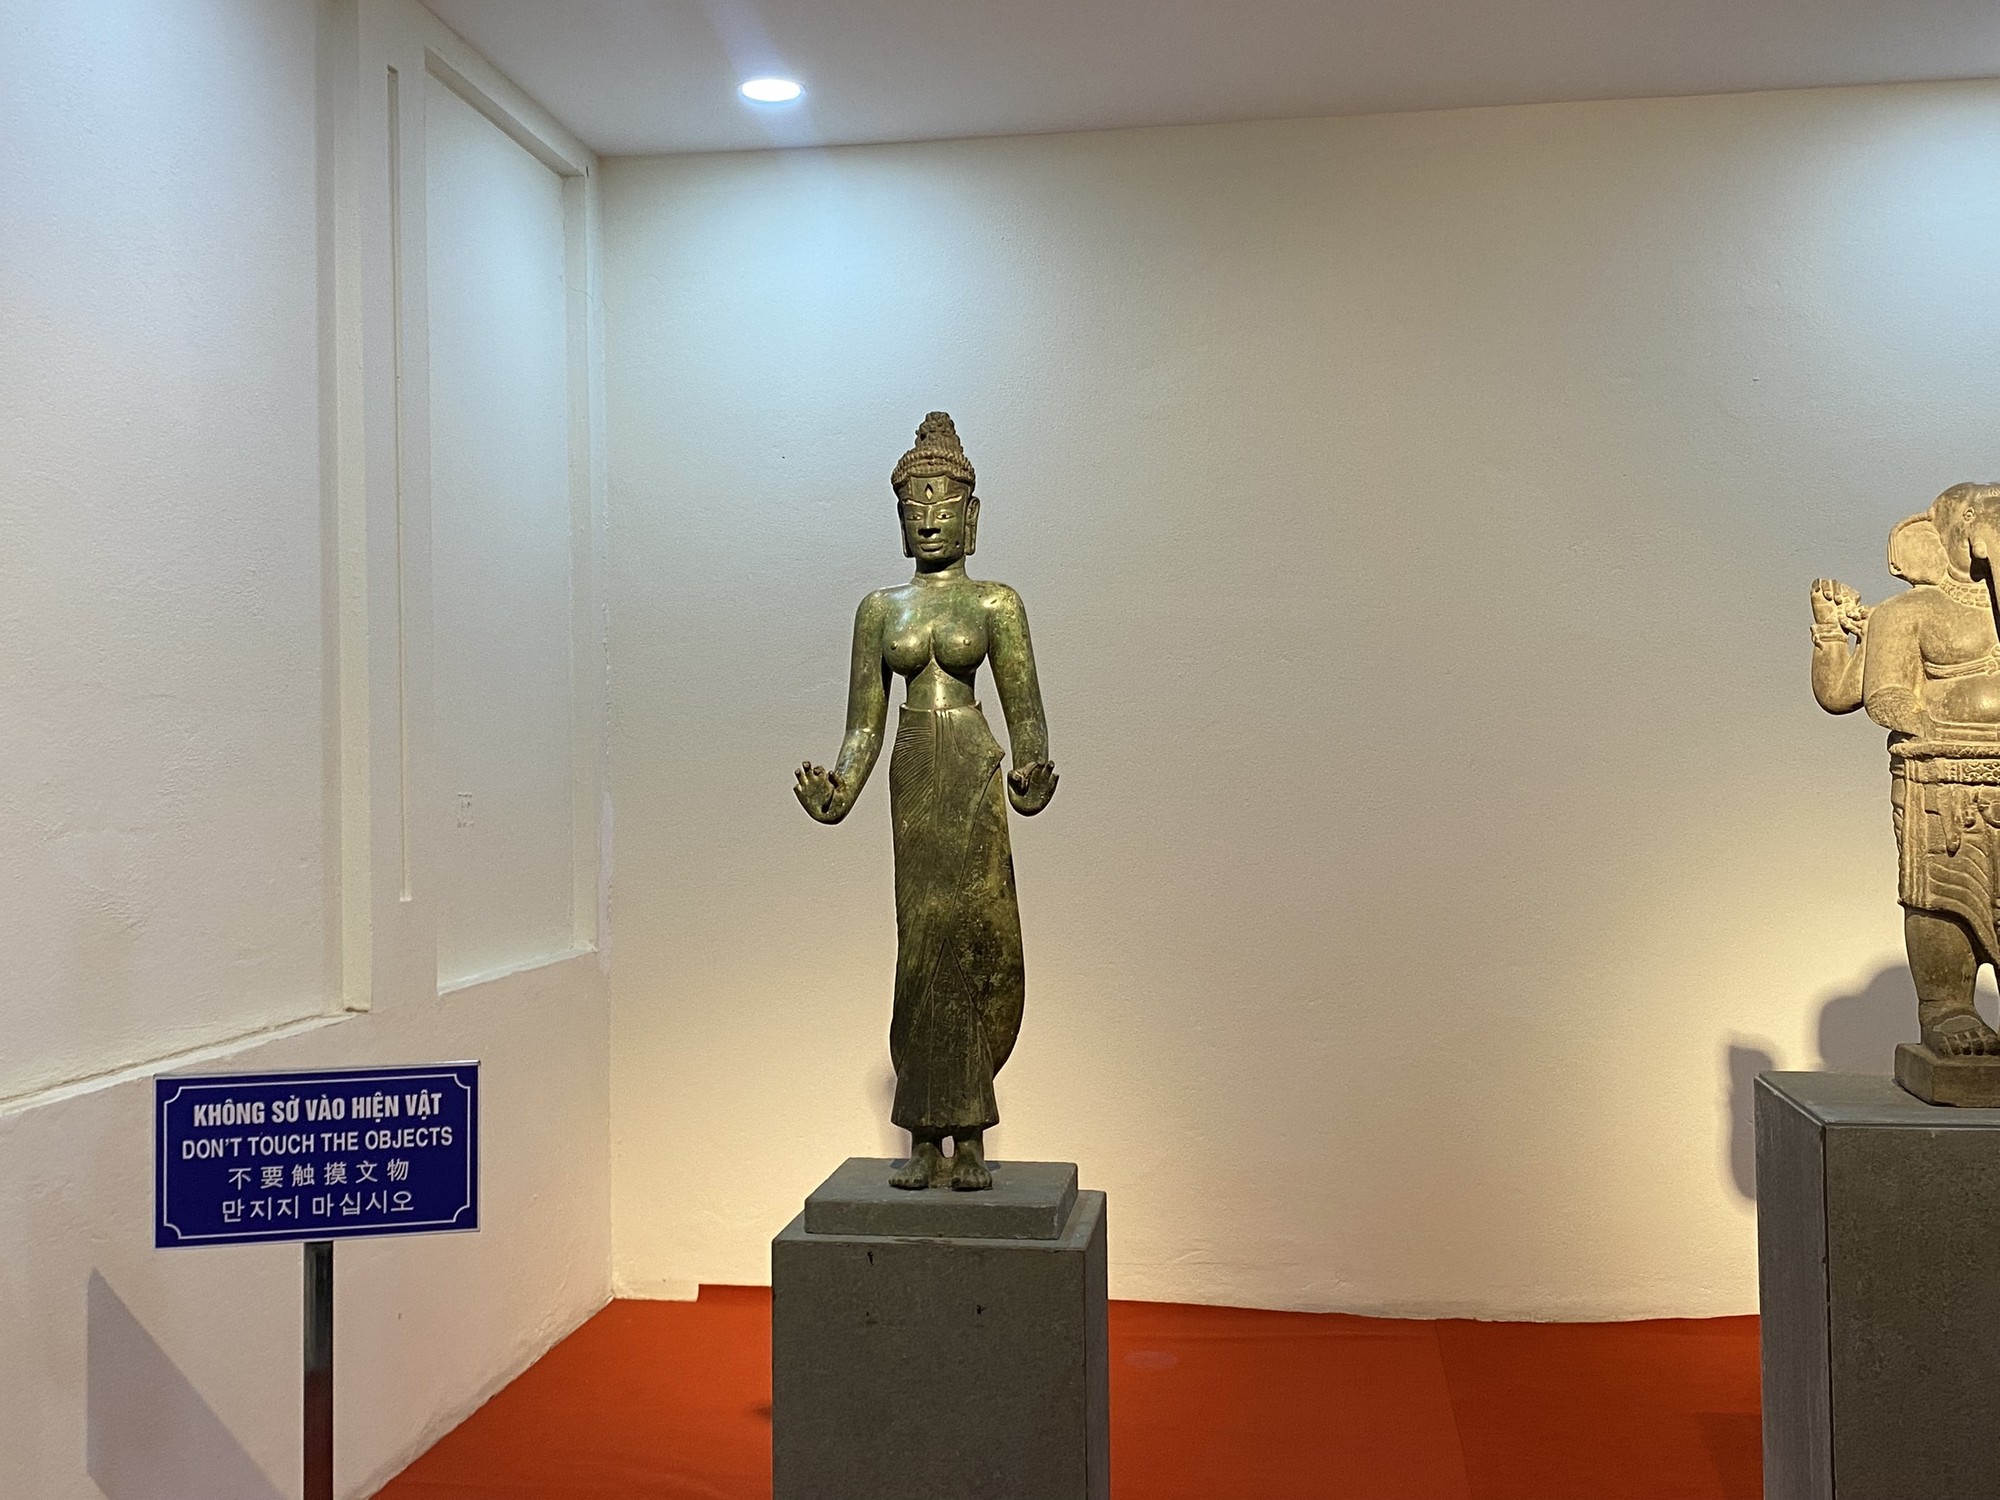 Chiêm ngưỡng 9 bảo vật quốc gia tại Bảo tàng Điêu khắc Chăm Đà Nẵng- Ảnh 4.